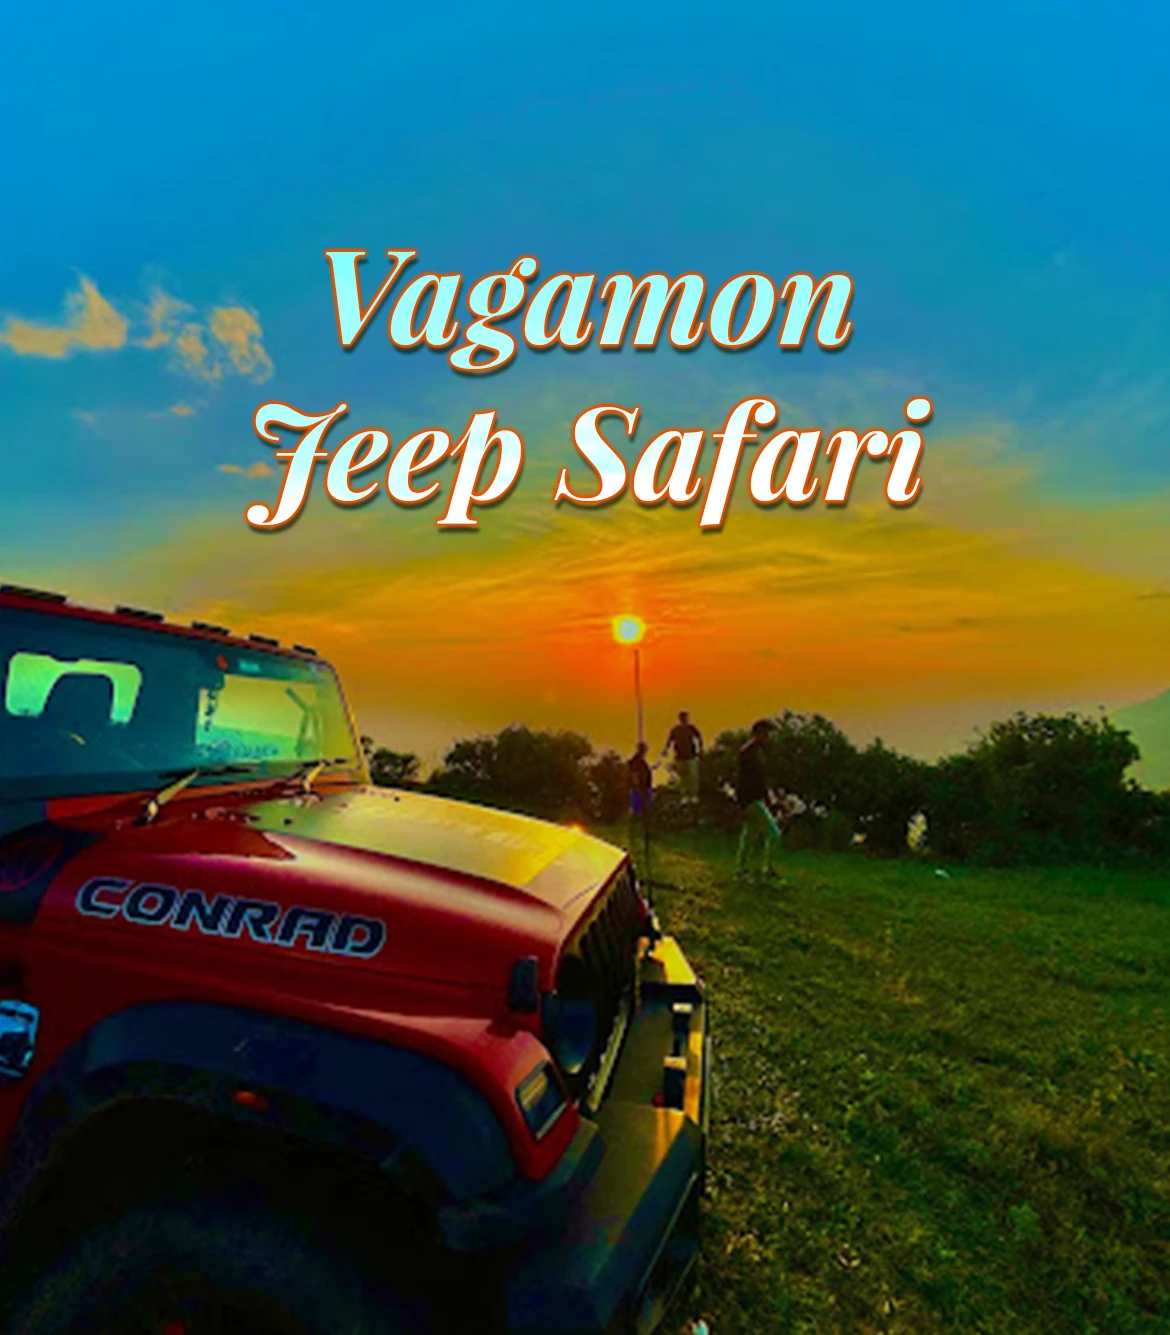 Vagamon Jeep Safari